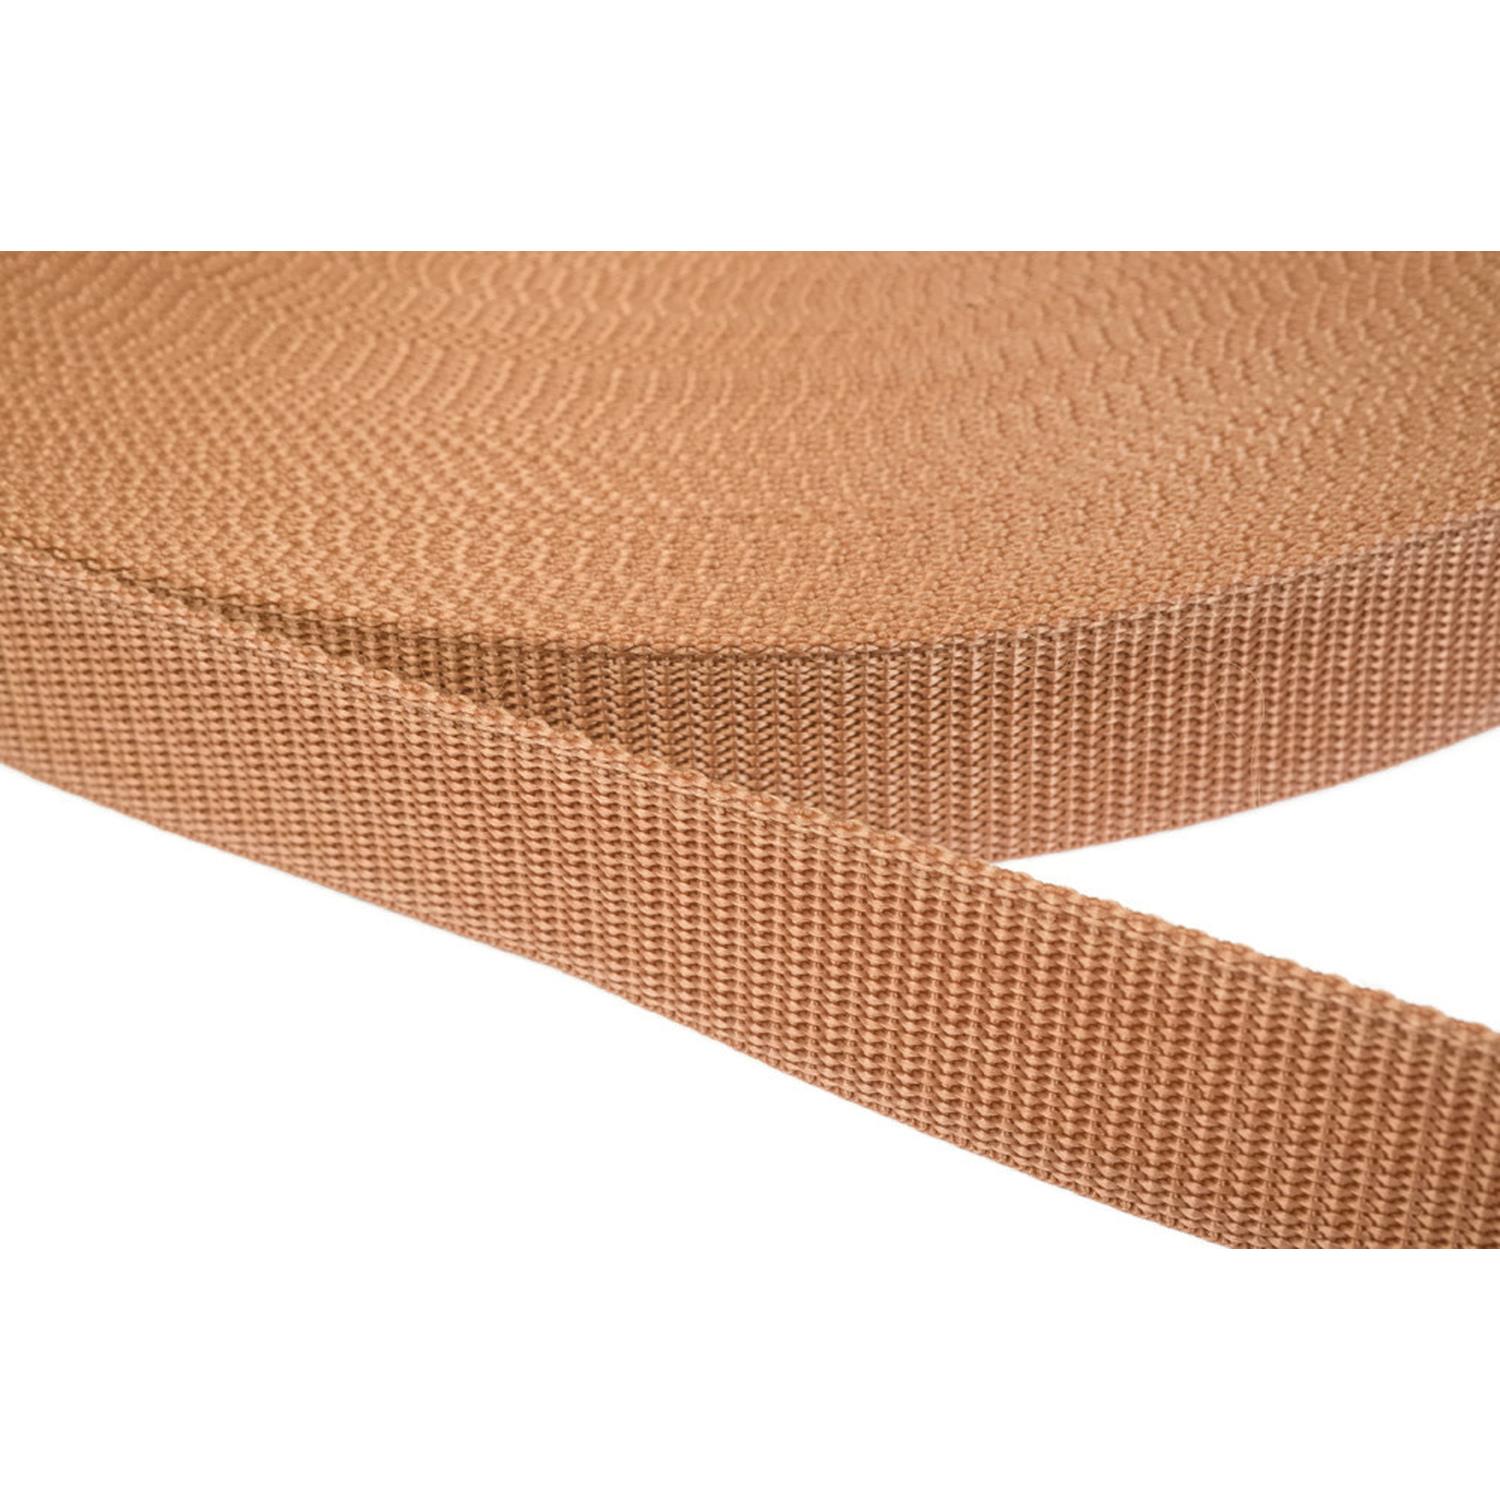 Gurtband 10mm breit aus Polypropylen in 41 Farben 06 - hellbraun 50 Meter